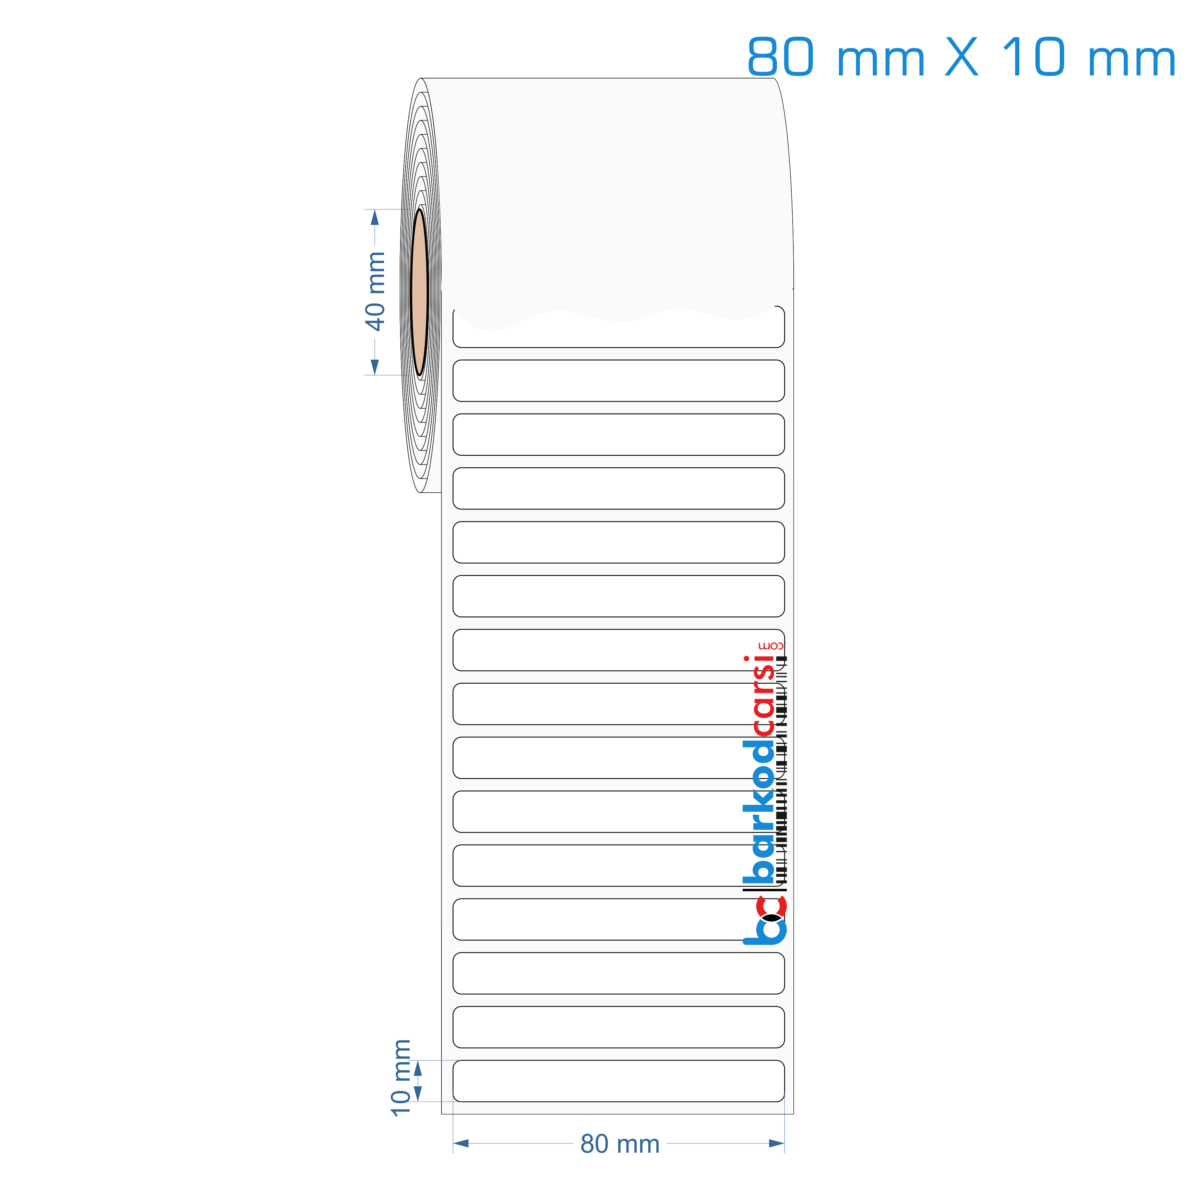 80x10 mm Opak / Mat PP, Fastyre Etiket (Fiyatları)